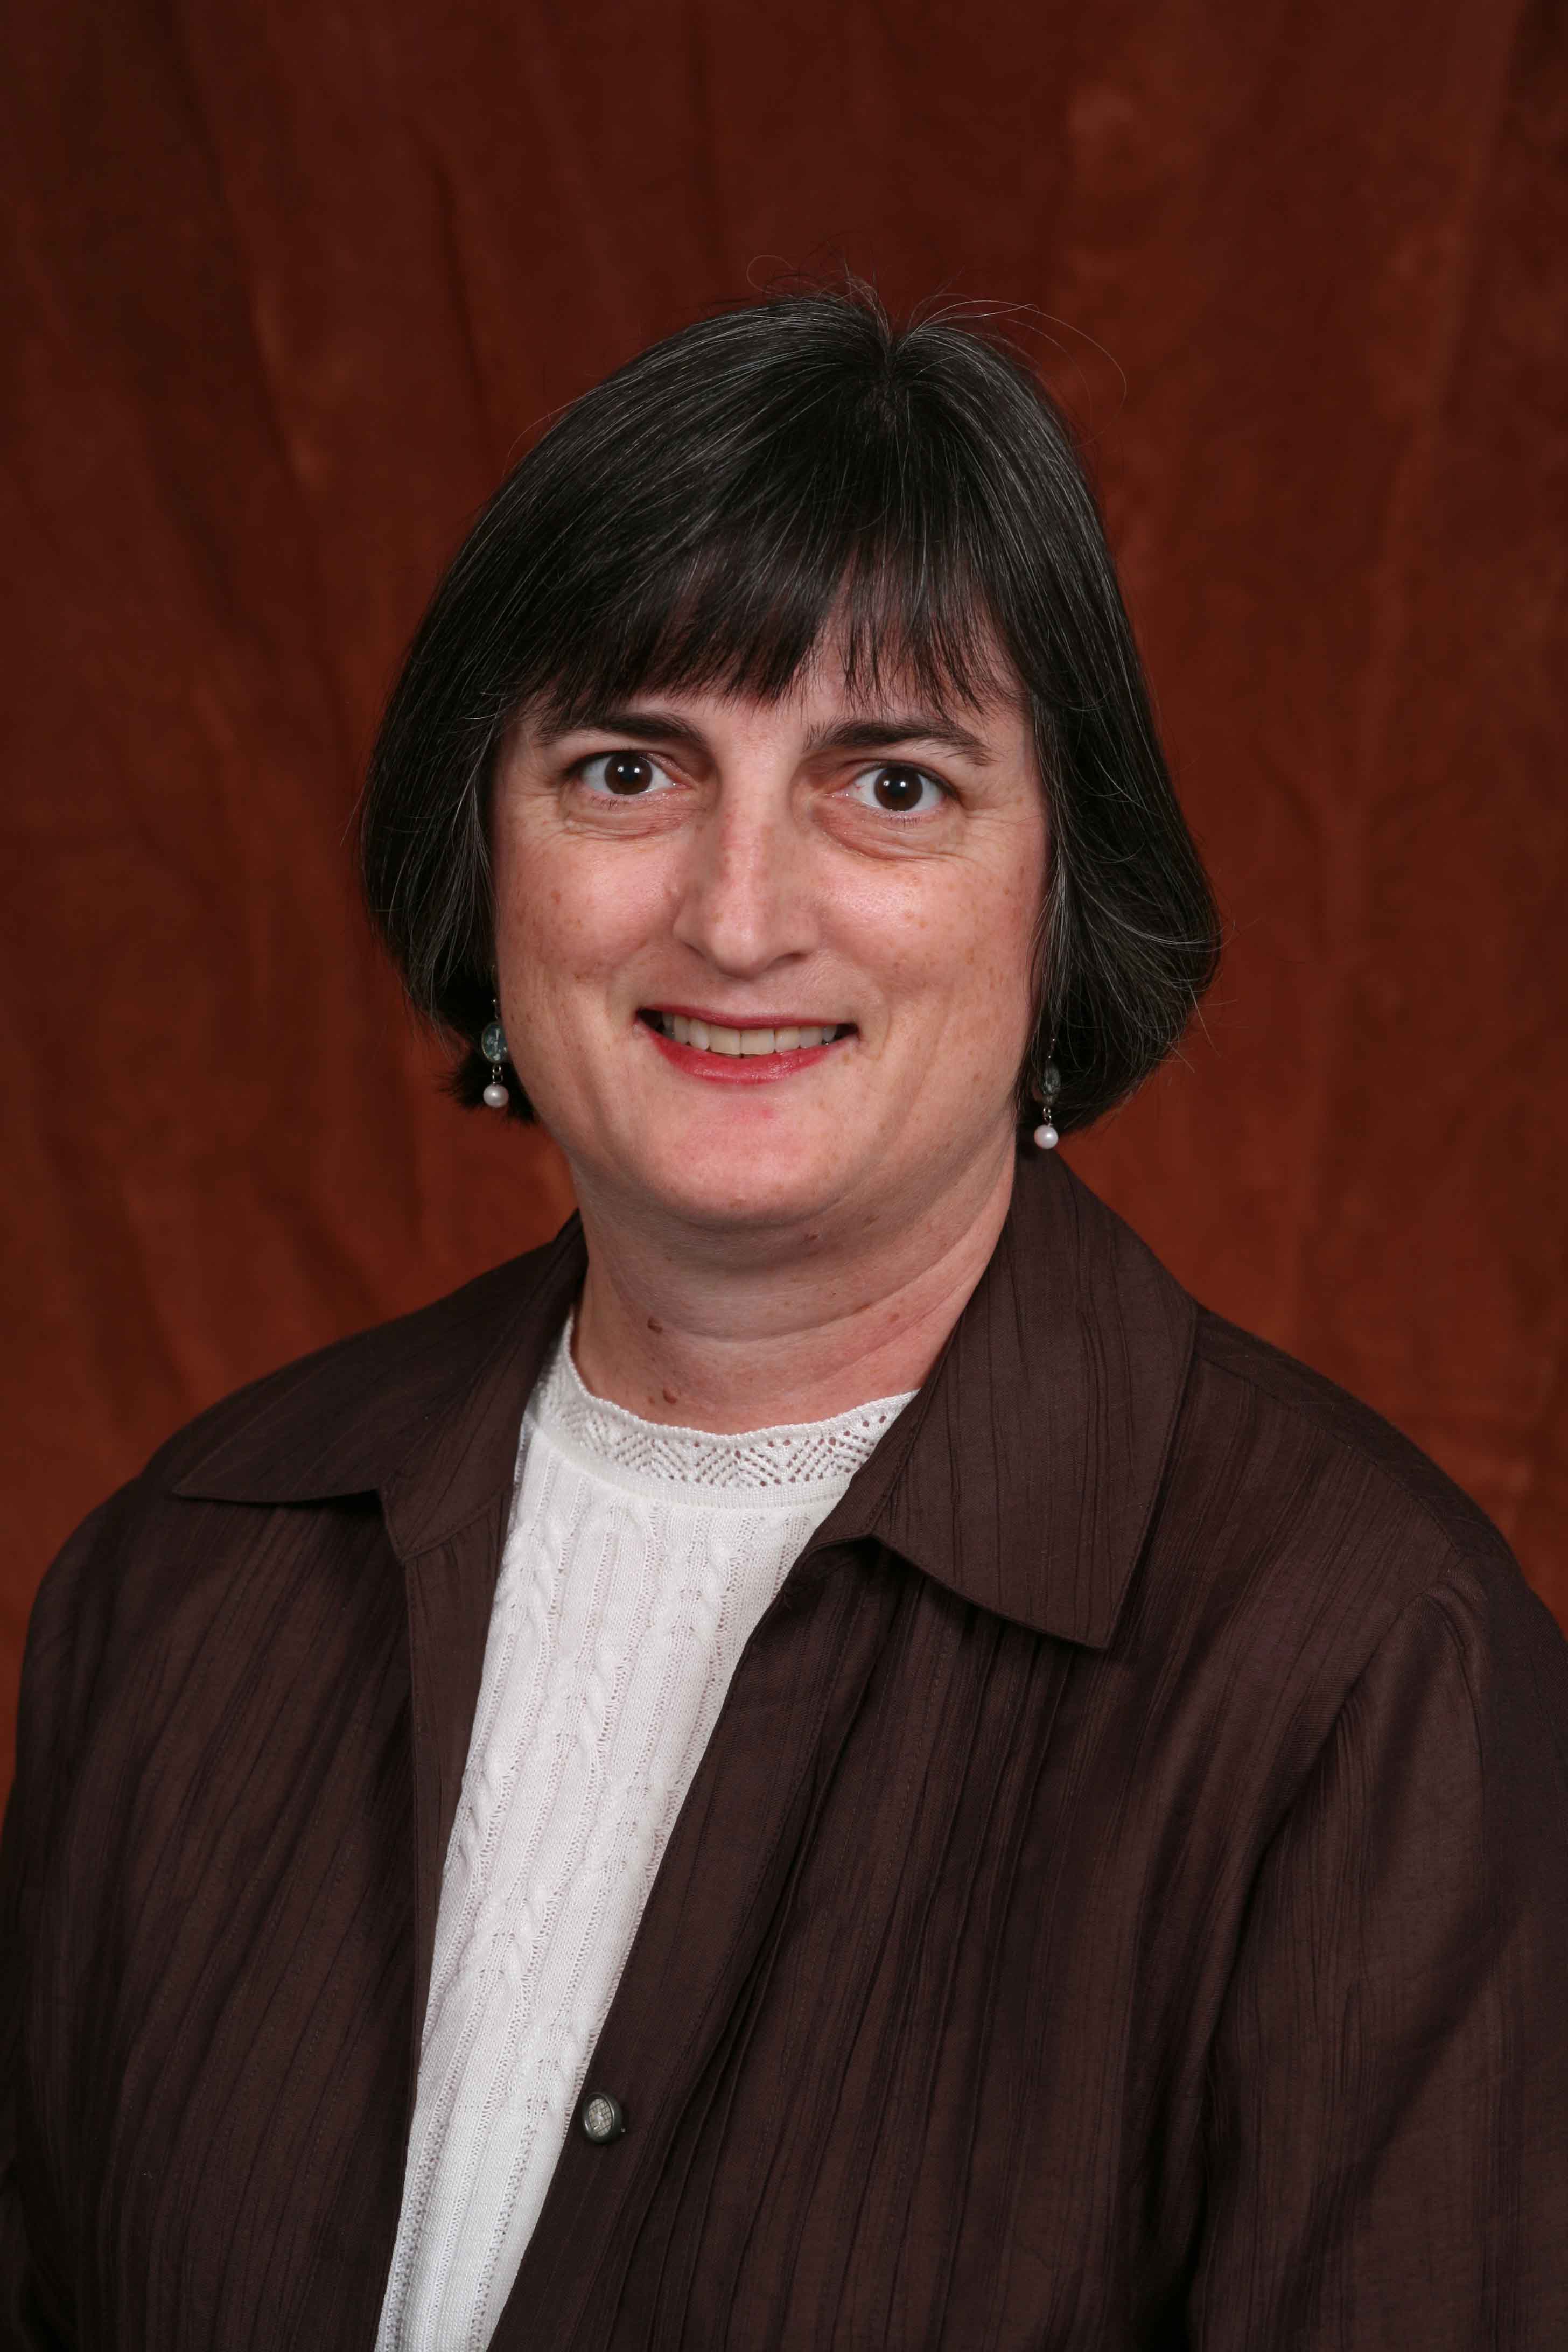 Lisa Granville, M.D., Associate Chair and Professor